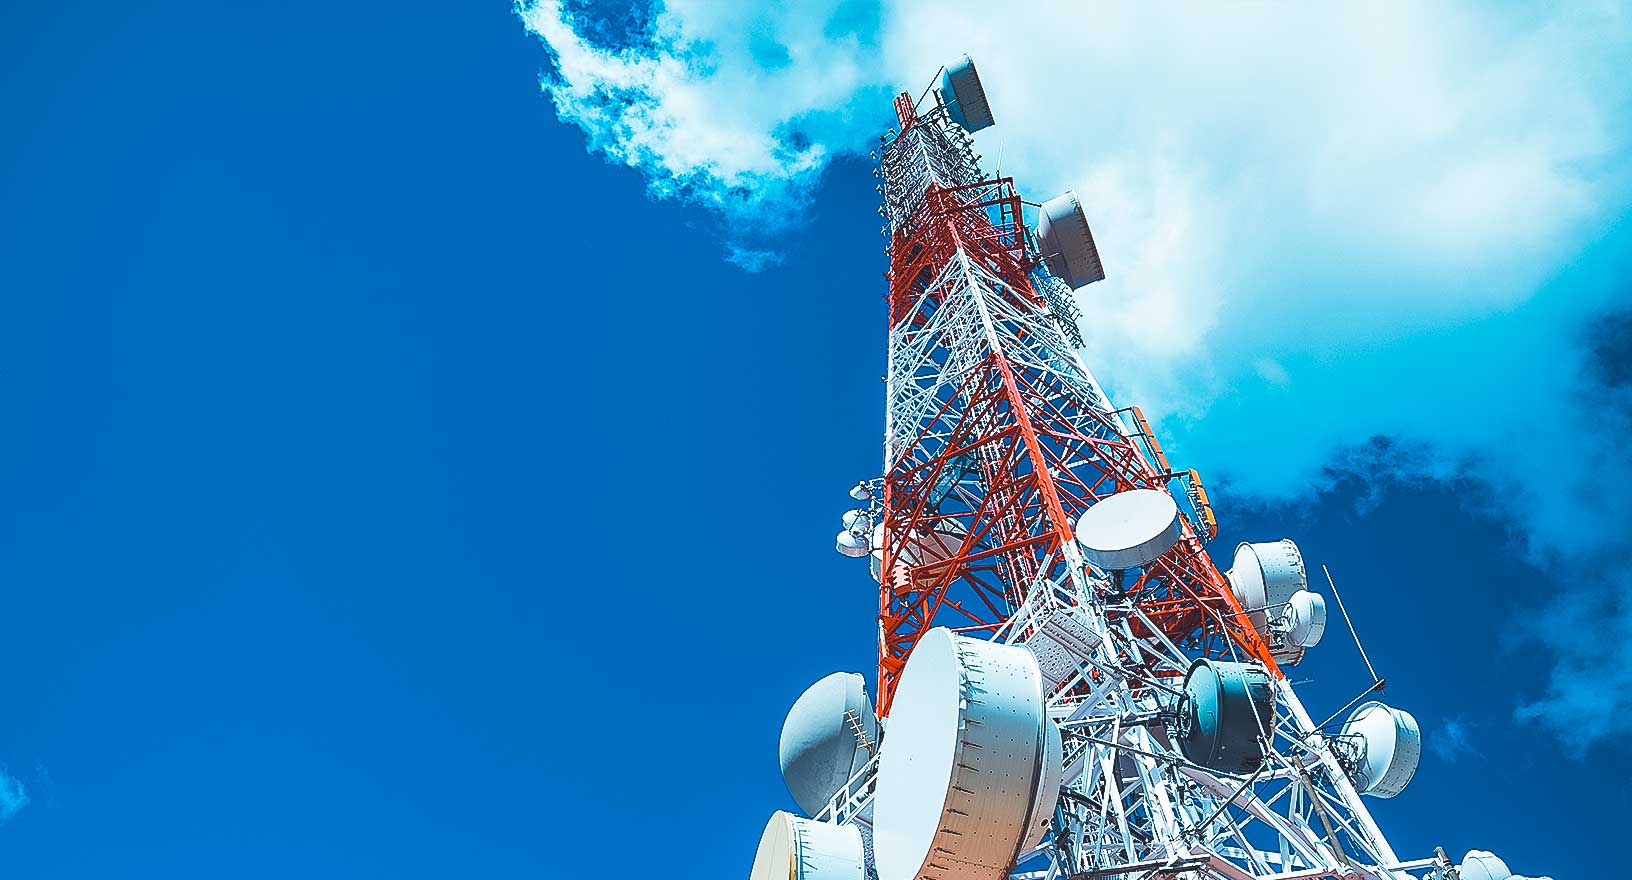 Un'immagine di una torre di telecomunicazione/cellulare